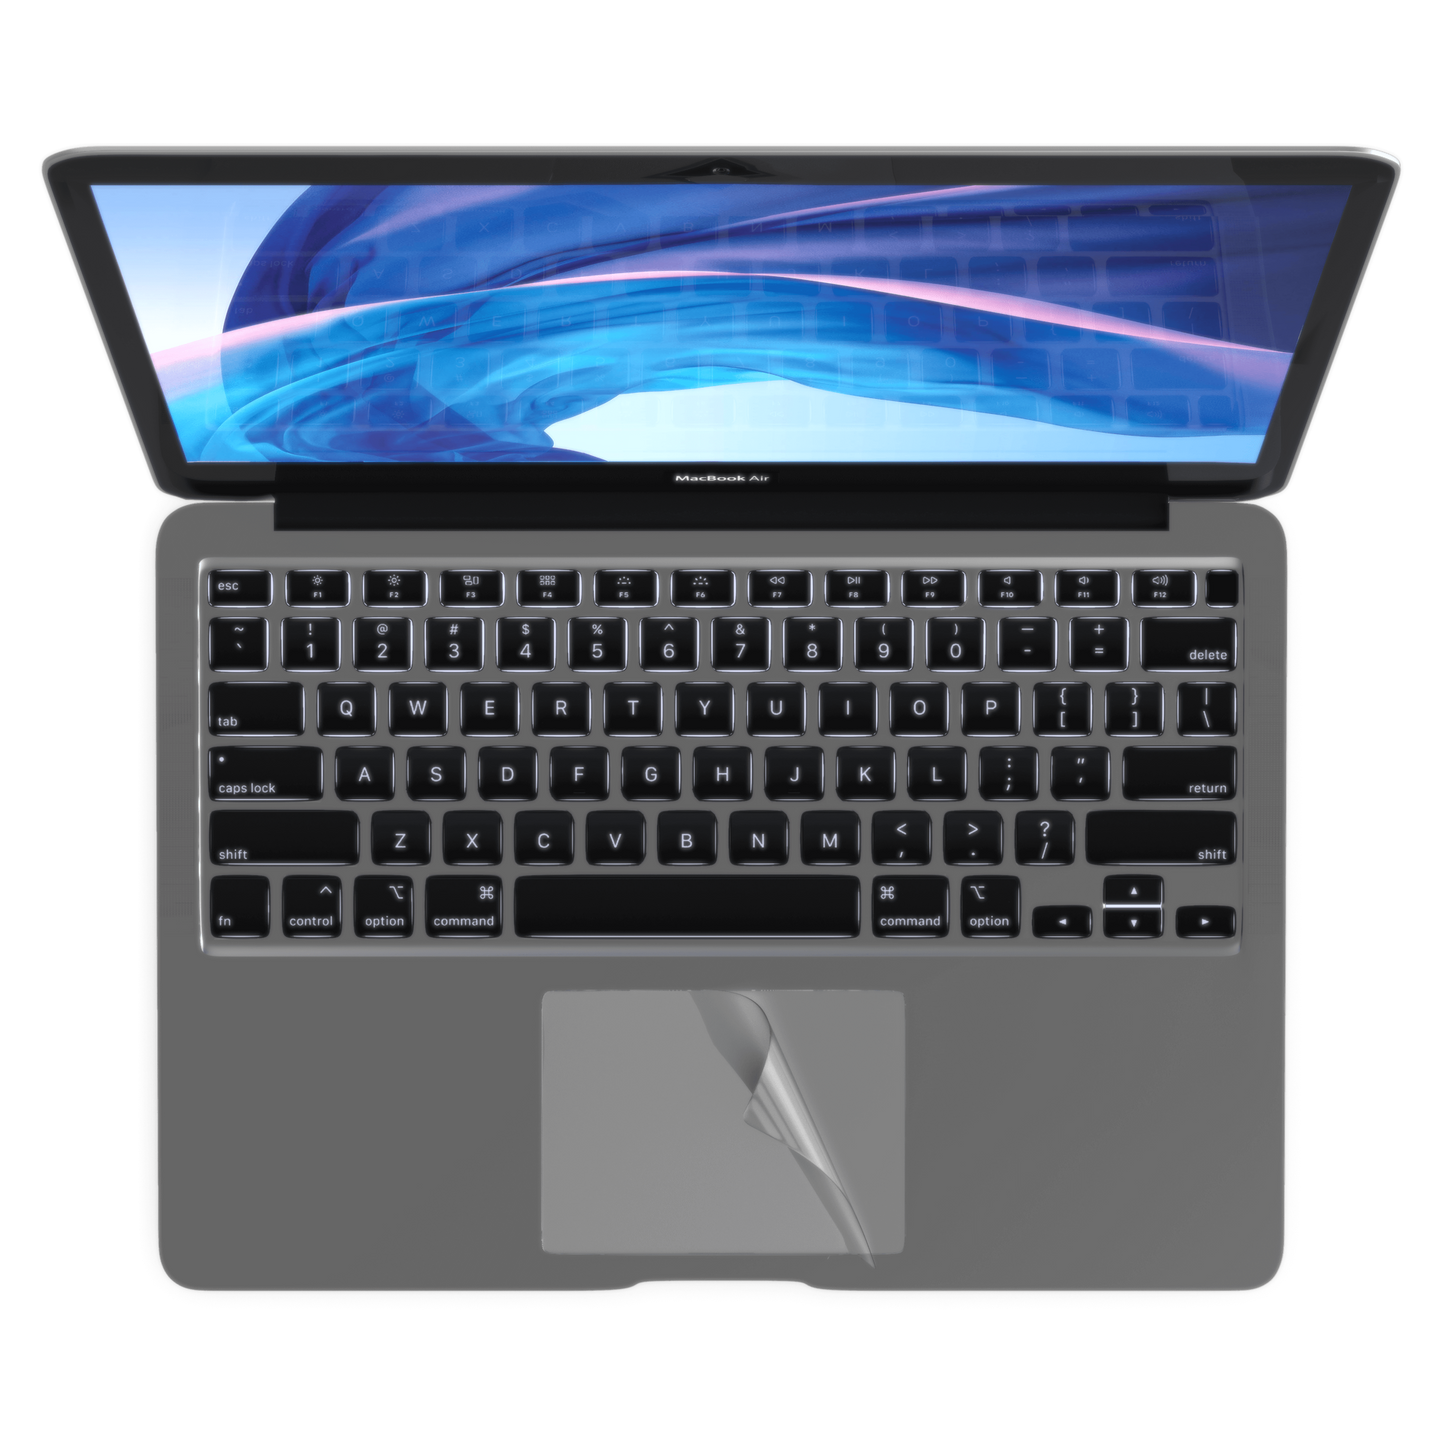 MoArmouz - Trackpad Protector for MacBook Air 13", M1 & 2020